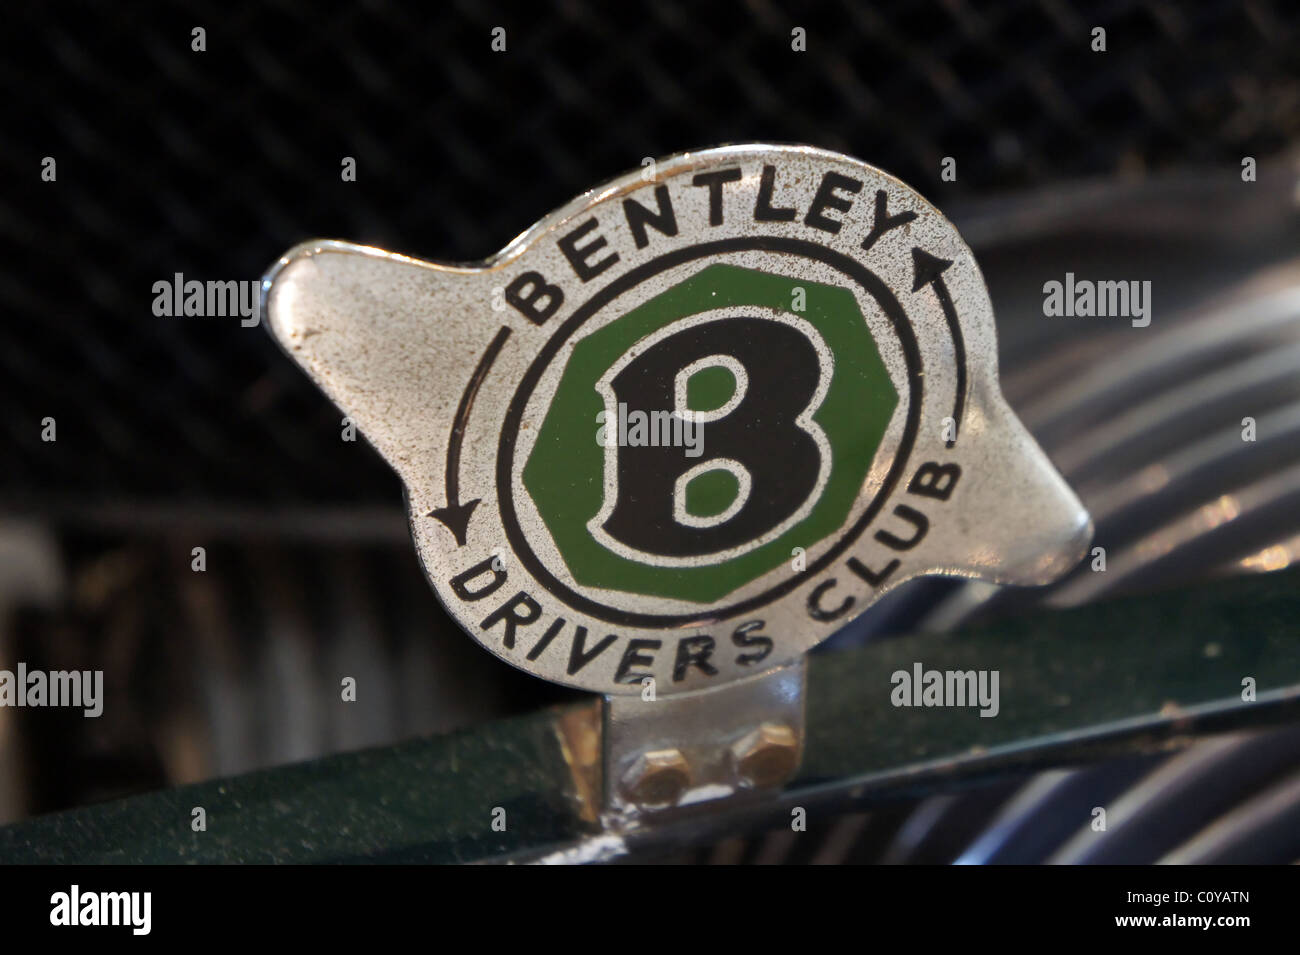 Bentley-Fahrer-Club-Abzeichen Stockfoto